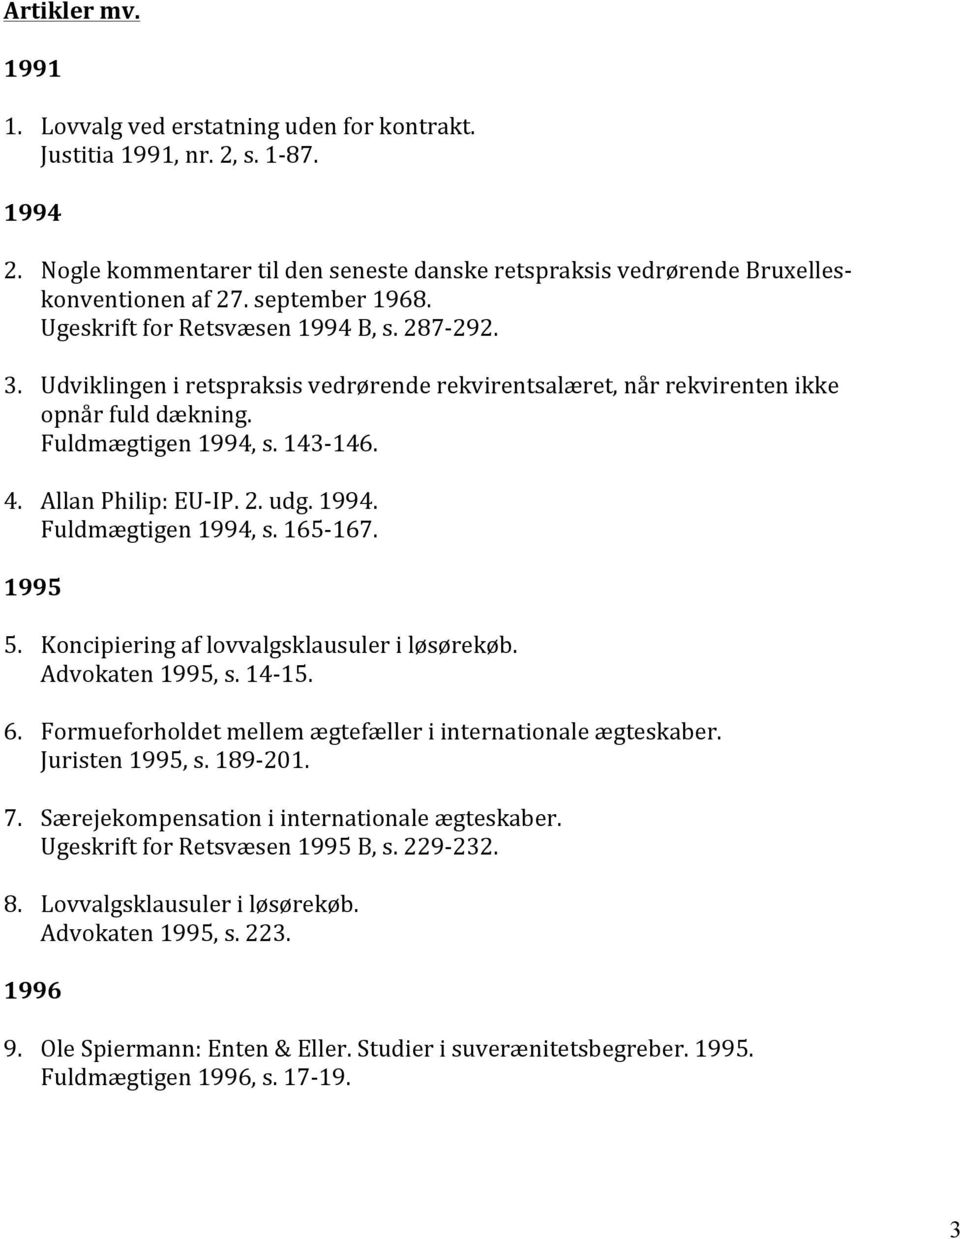 Allan Philip: EU- IP. 2. udg. 1994. Fuldmægtigen 1994, s. 165-167. 1995 5. Koncipiering af lovvalgsklausuler i løsørekøb. Advokaten 1995, s. 14-15. 6.